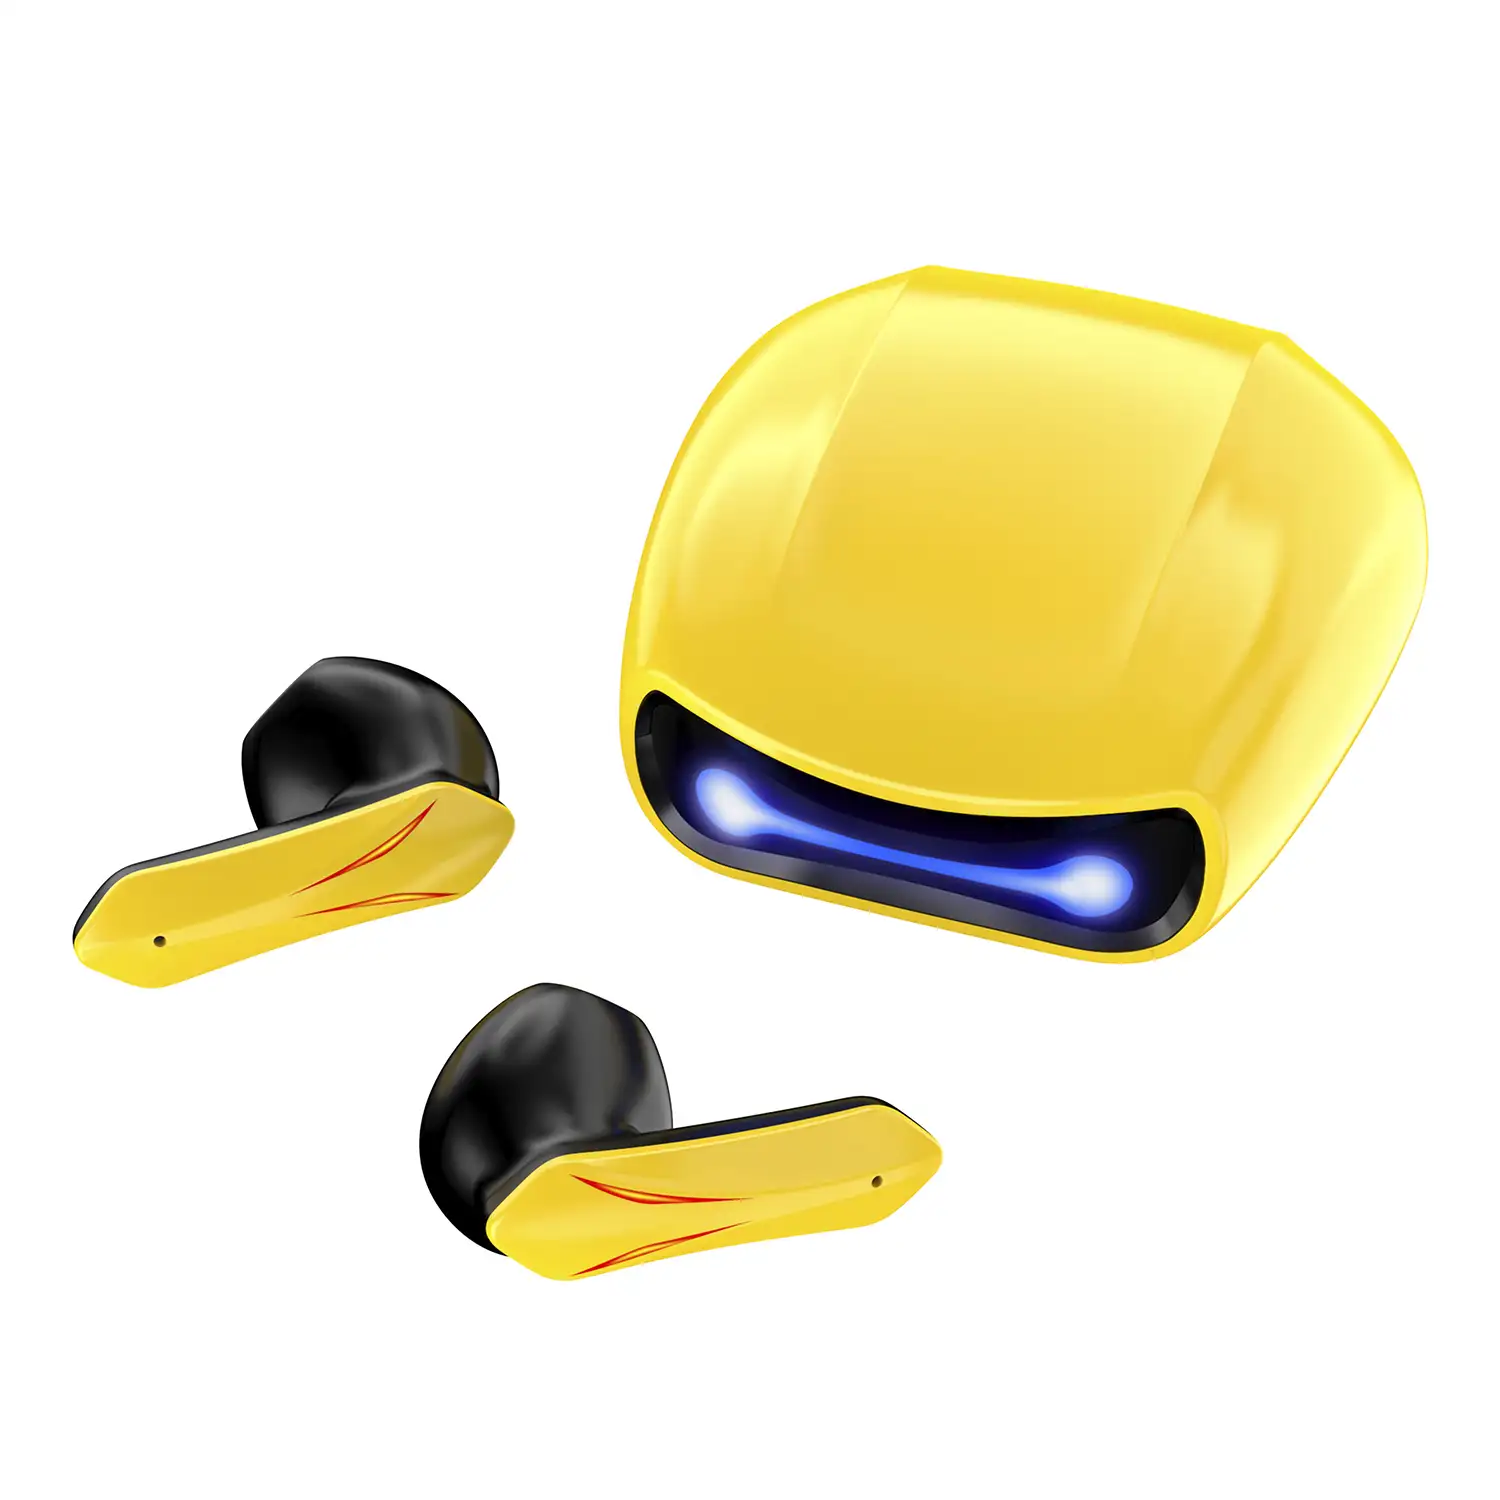 Auriculares R05 TWS, Bluetooth 5.2. Base de carga luces led RGB. Control táctil de reproducción musical y llamadas.